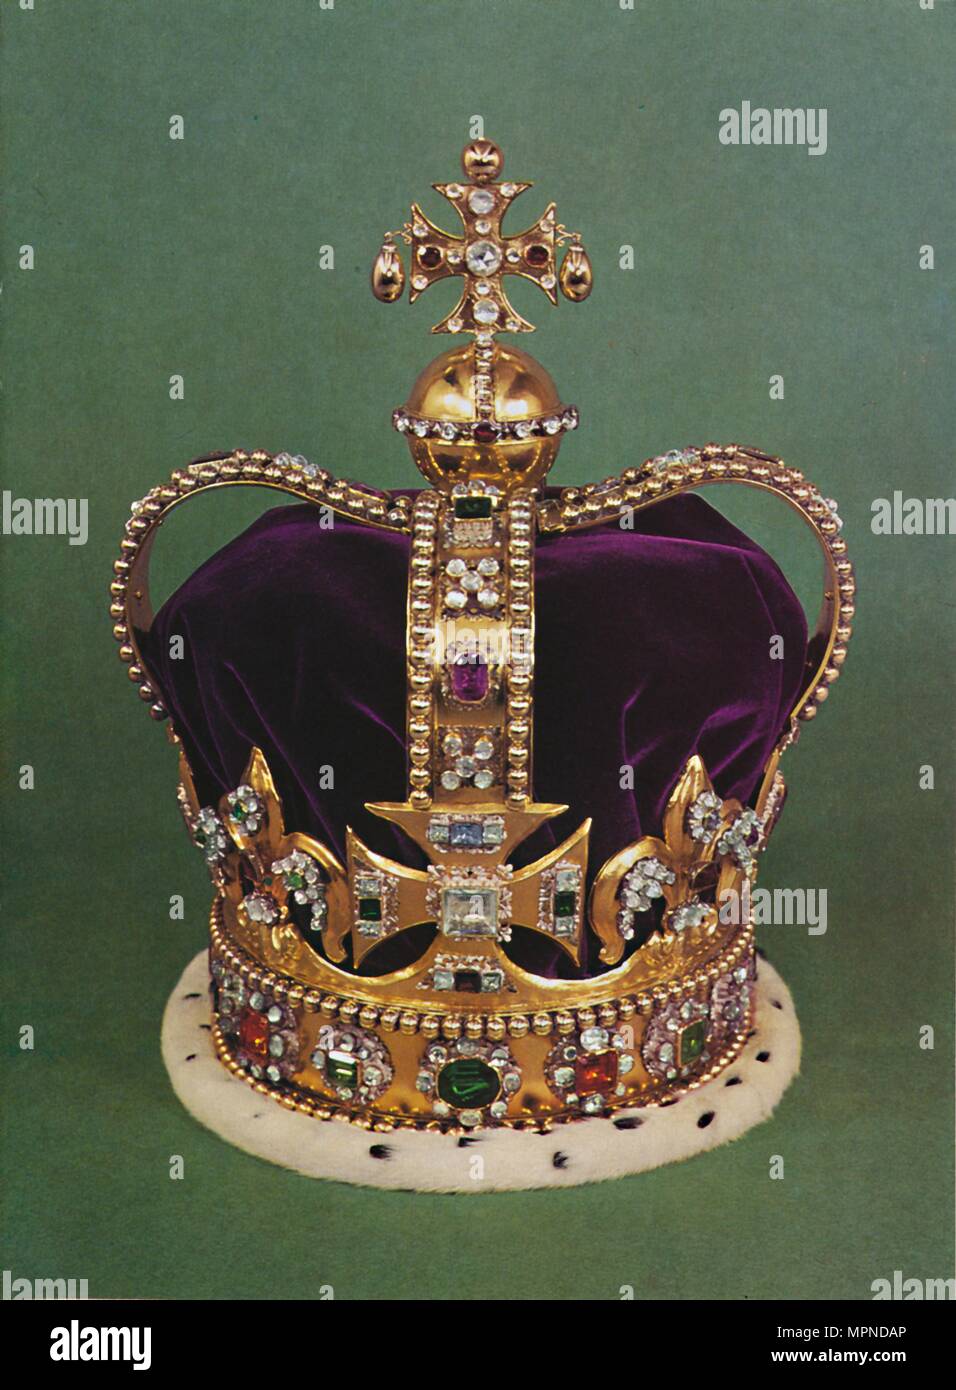 T'S. Edward's Crown, mit denen die Herrscher gekrönt", 1953. Artist: Unbekannt. Stockfoto